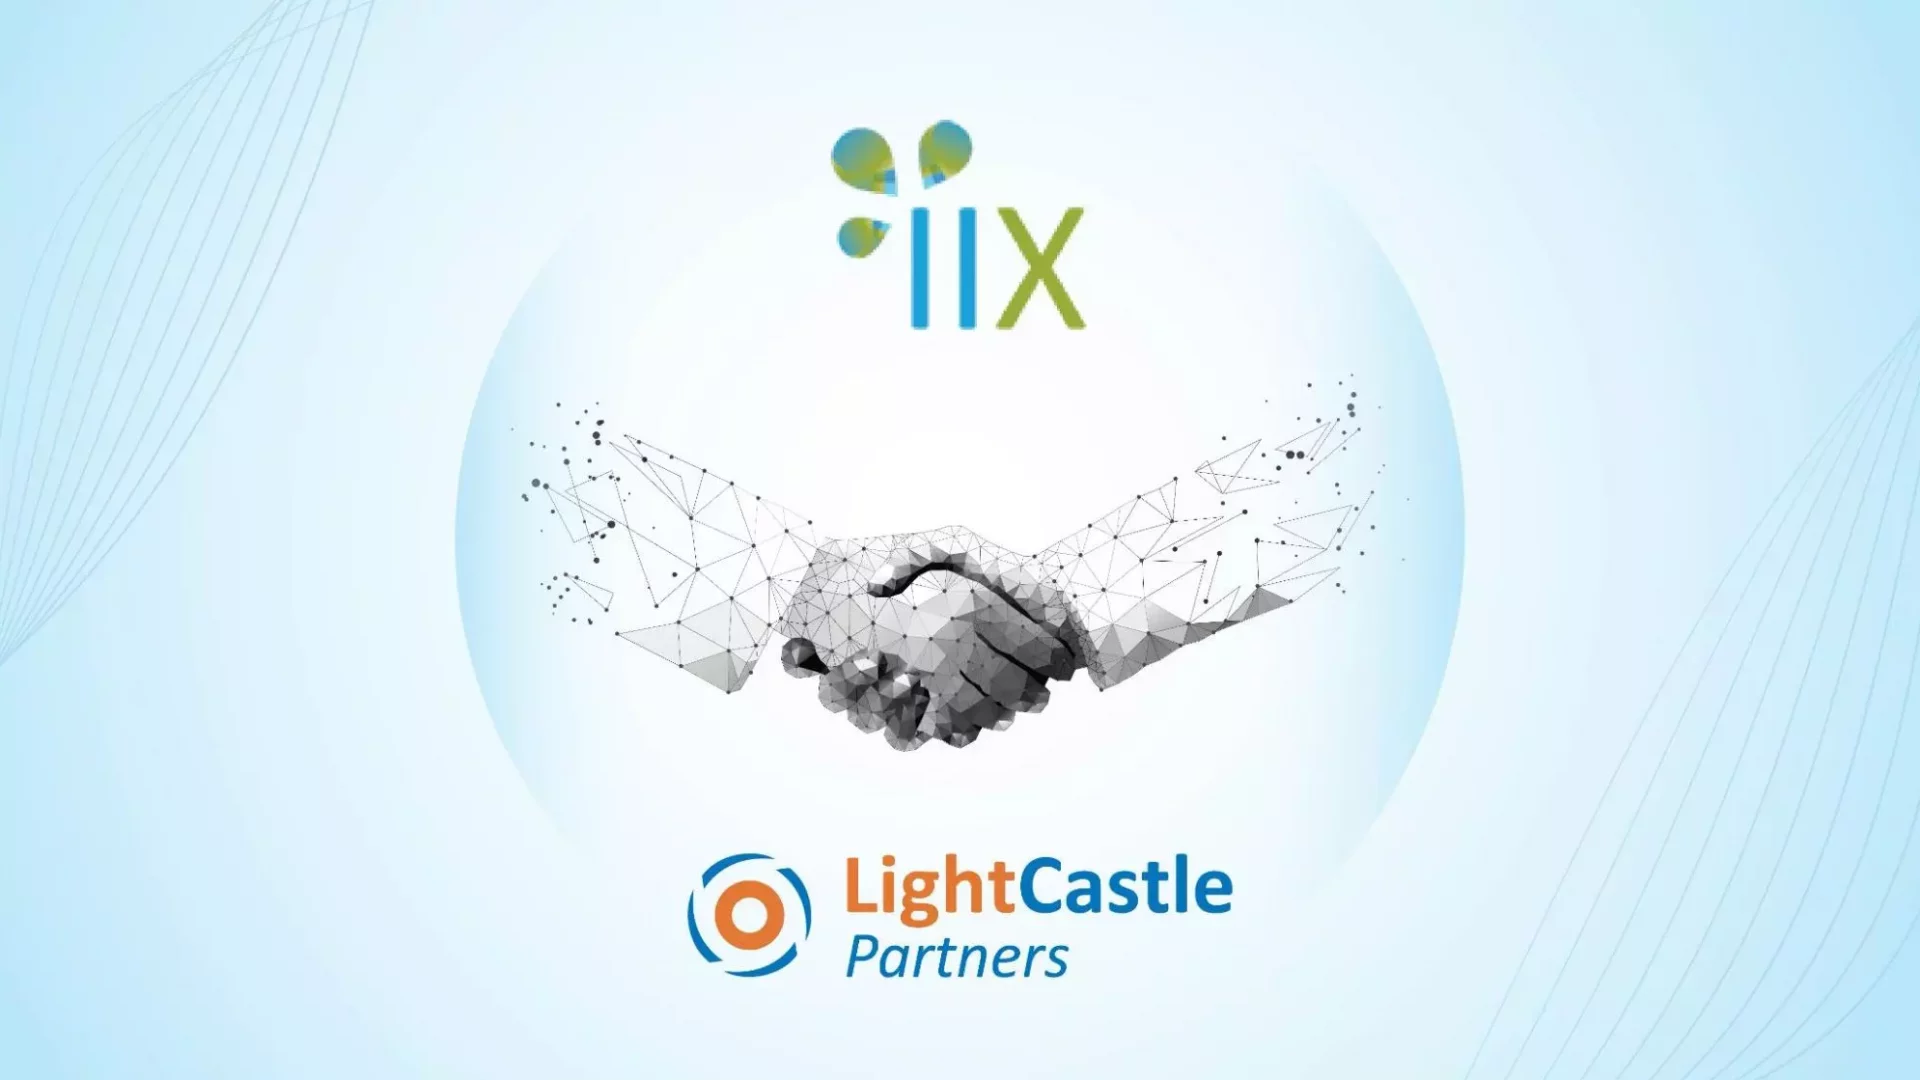 LightCastle Signs Agreement With IIX